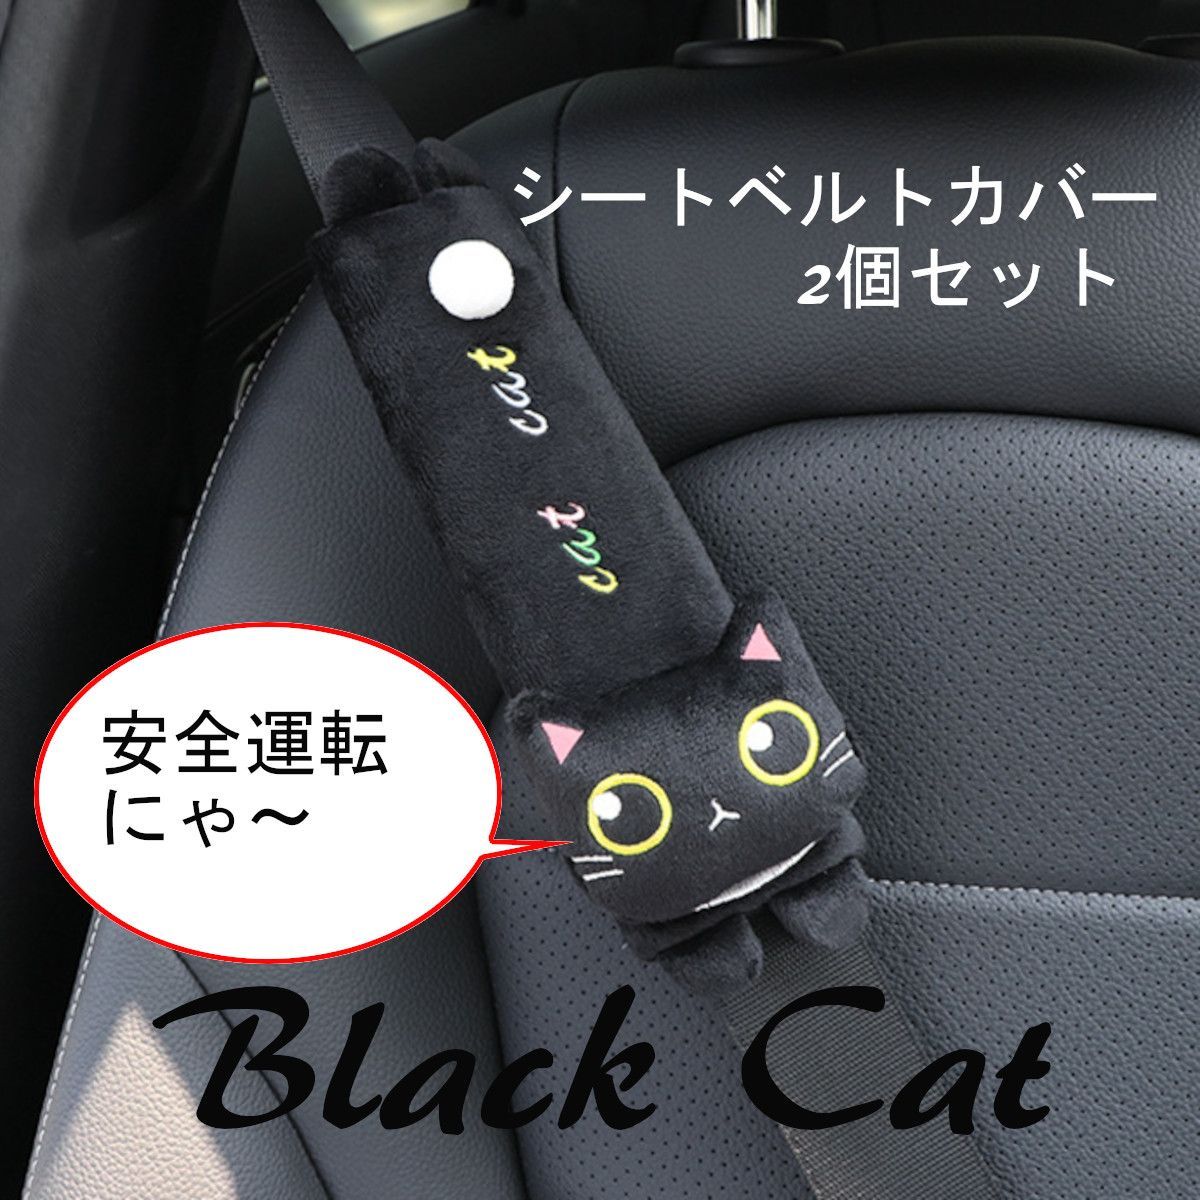 ♦️2割引済み [◇23]シートベルトカバー 2個:ネコさん/ブラック ab-